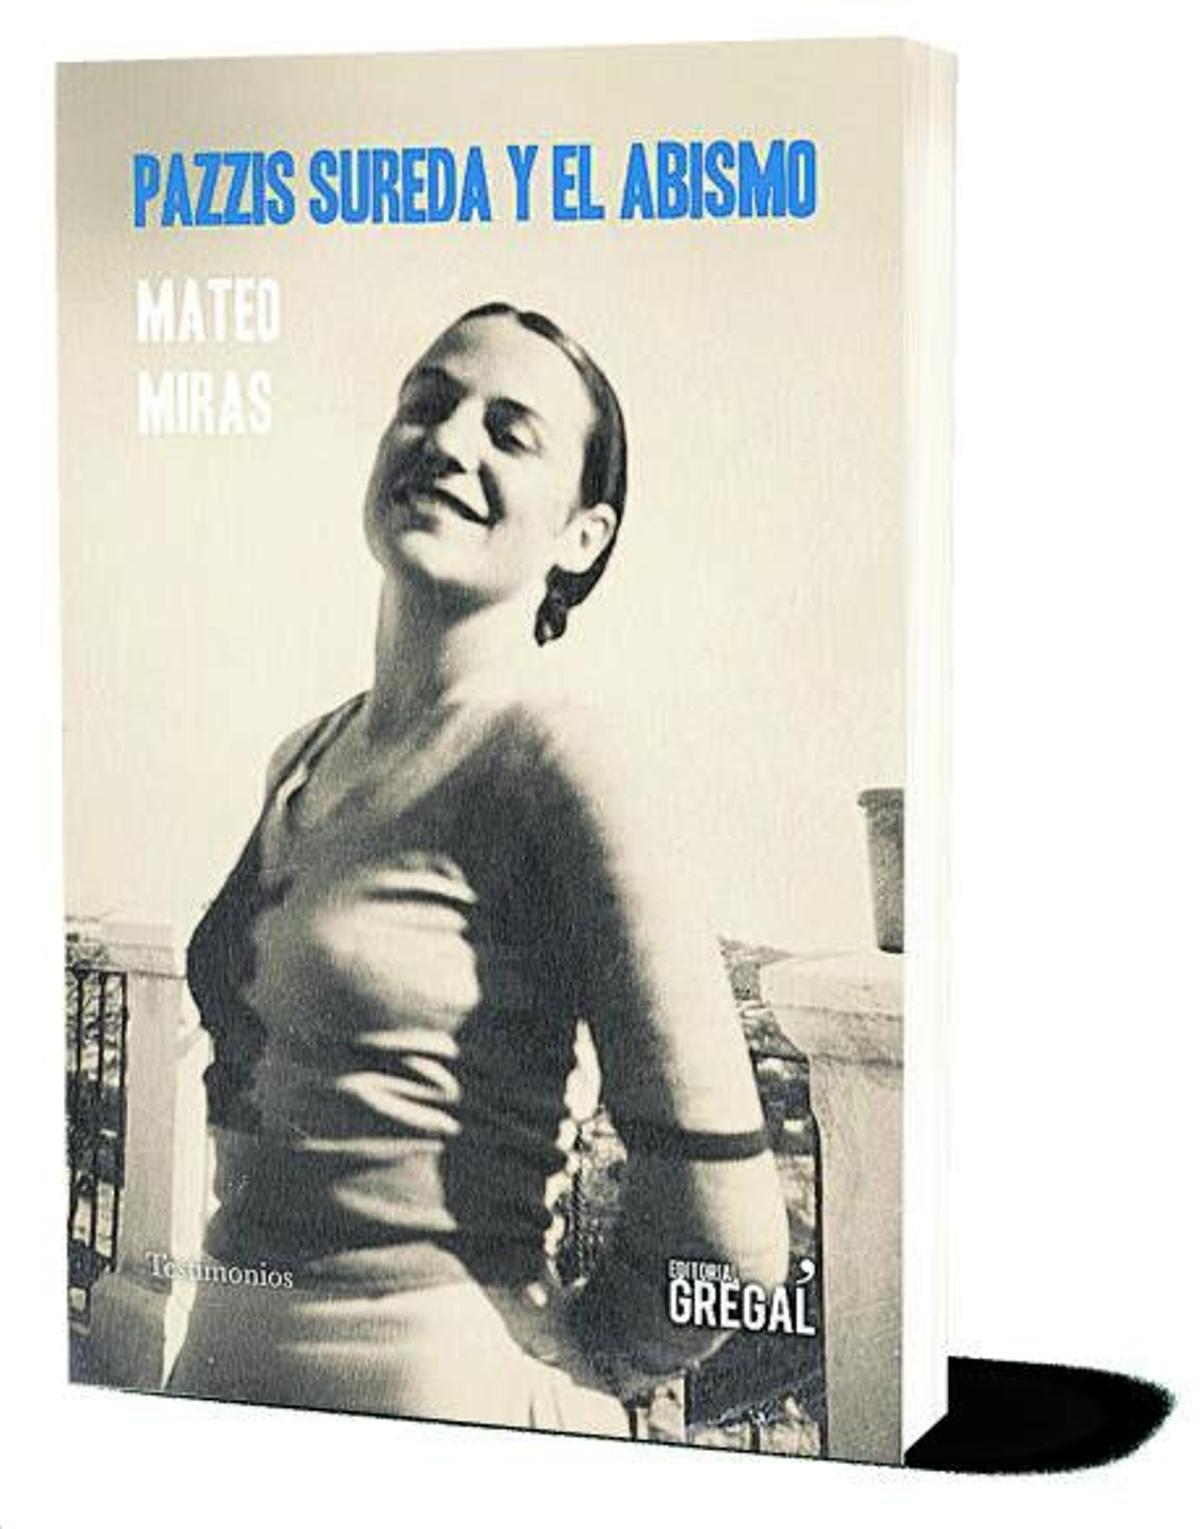 La portada del libro, inspirada en la «interesante, desgarradora y brillante» historia de Pazzis. El volumen disgustó a parte de la familia, que alegó que había más contenido inventado que real.